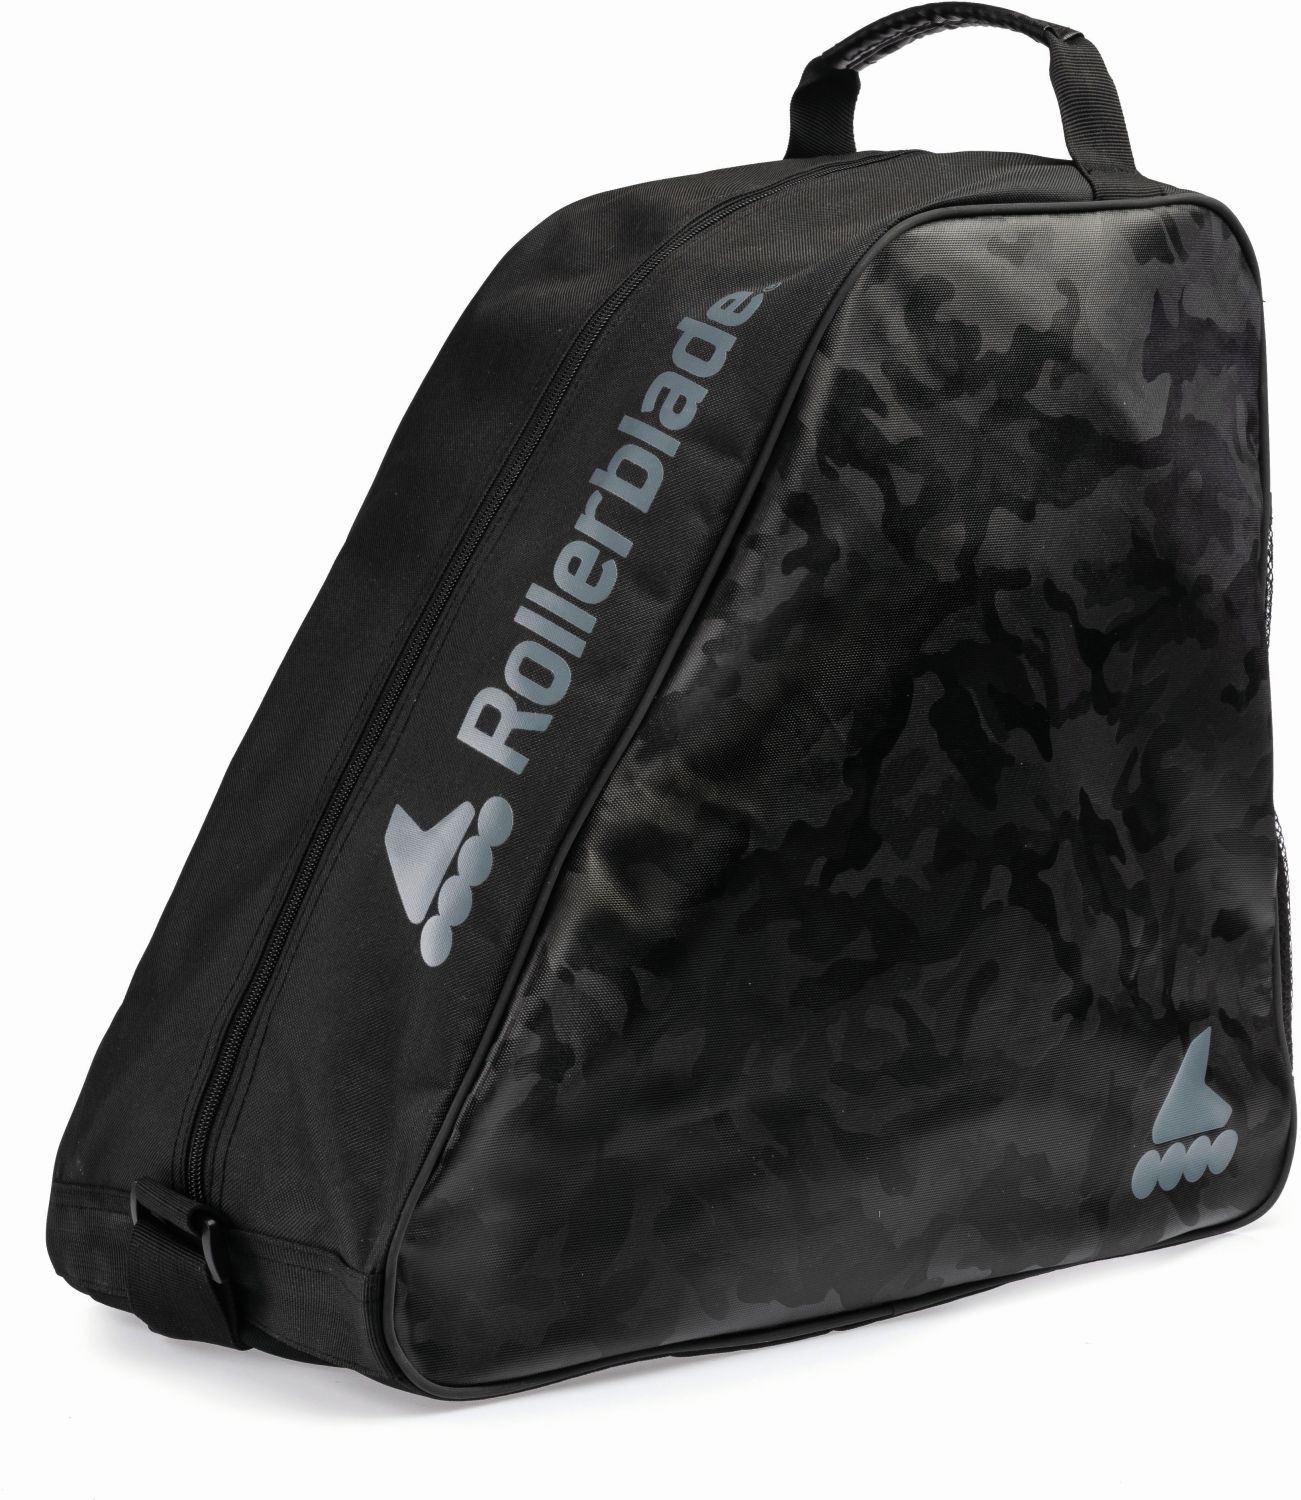 ROLLERBLADE Inliner Inlineskates Tasche SKATE BAG 2021 black Skatebags Taschen 